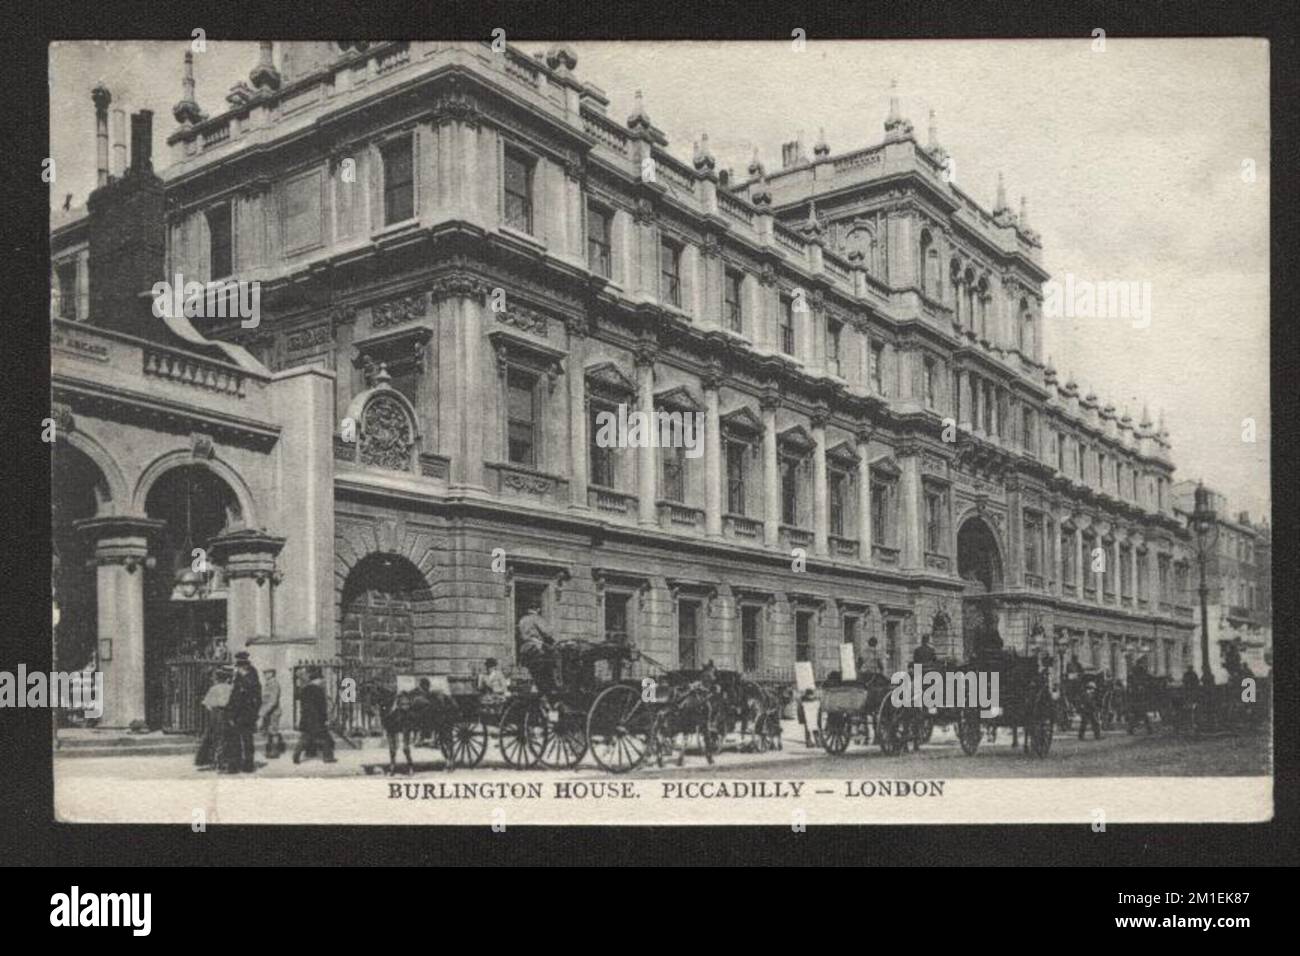 Antique Postcard of Burlington House in Piccaddily London UK mit Pferdekutschen und Passanten. Momentaufnahme des viktorianischen London. Stockfoto